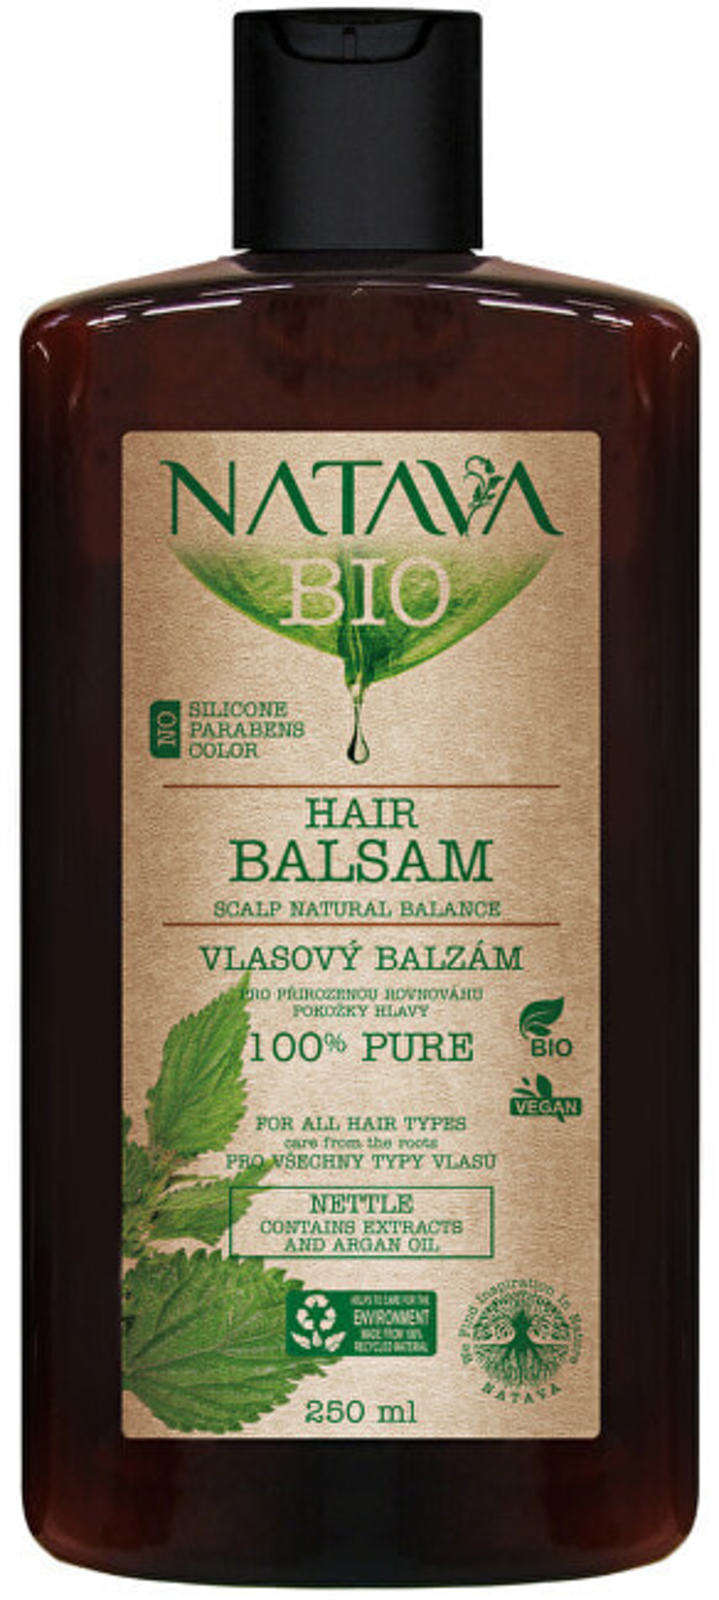 Бальзам для волос Natava Nettle с экстрактом крапивы, облегчает расчесывание, 250 мл кладовая красоты бальзам для волос с экстрактом крапивы 500